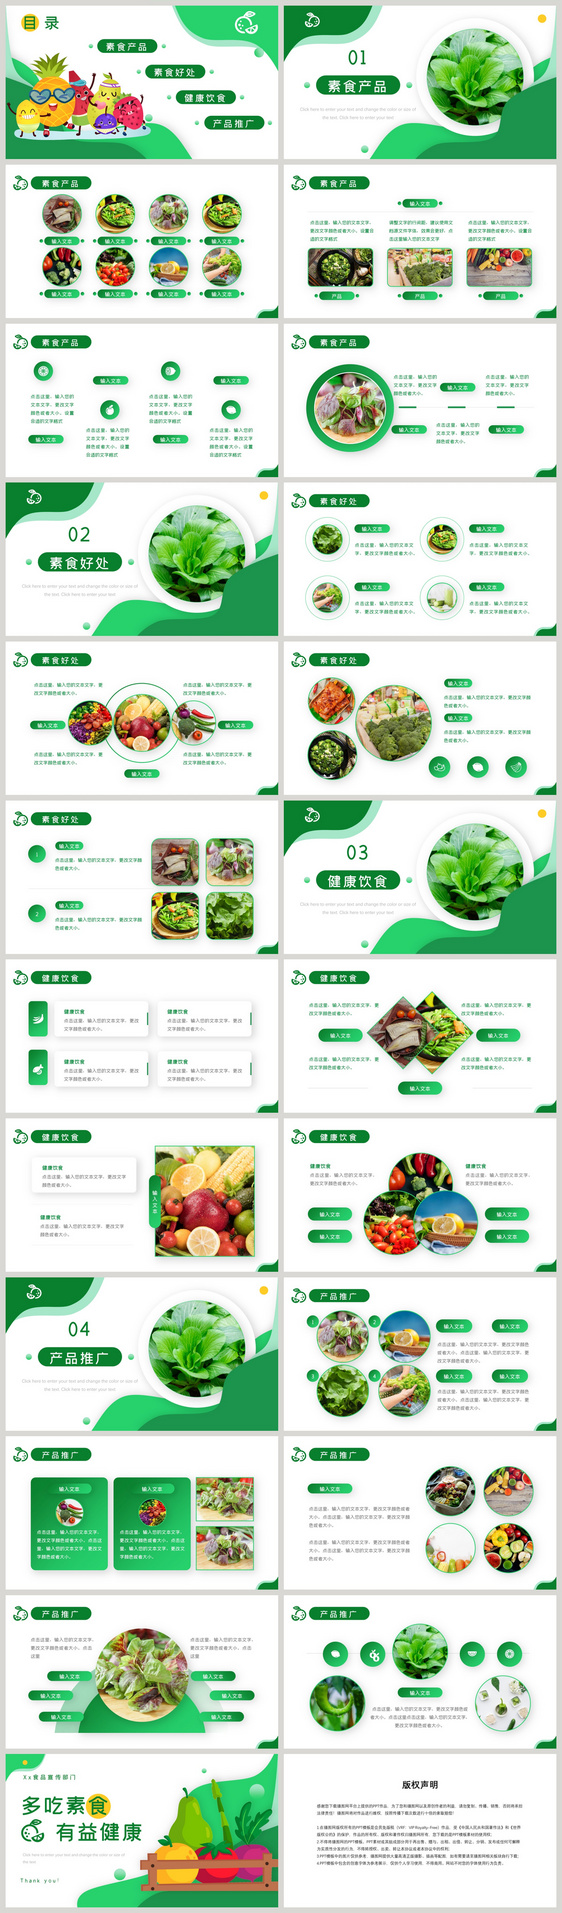 绿色素食健康食品介绍PPT模板